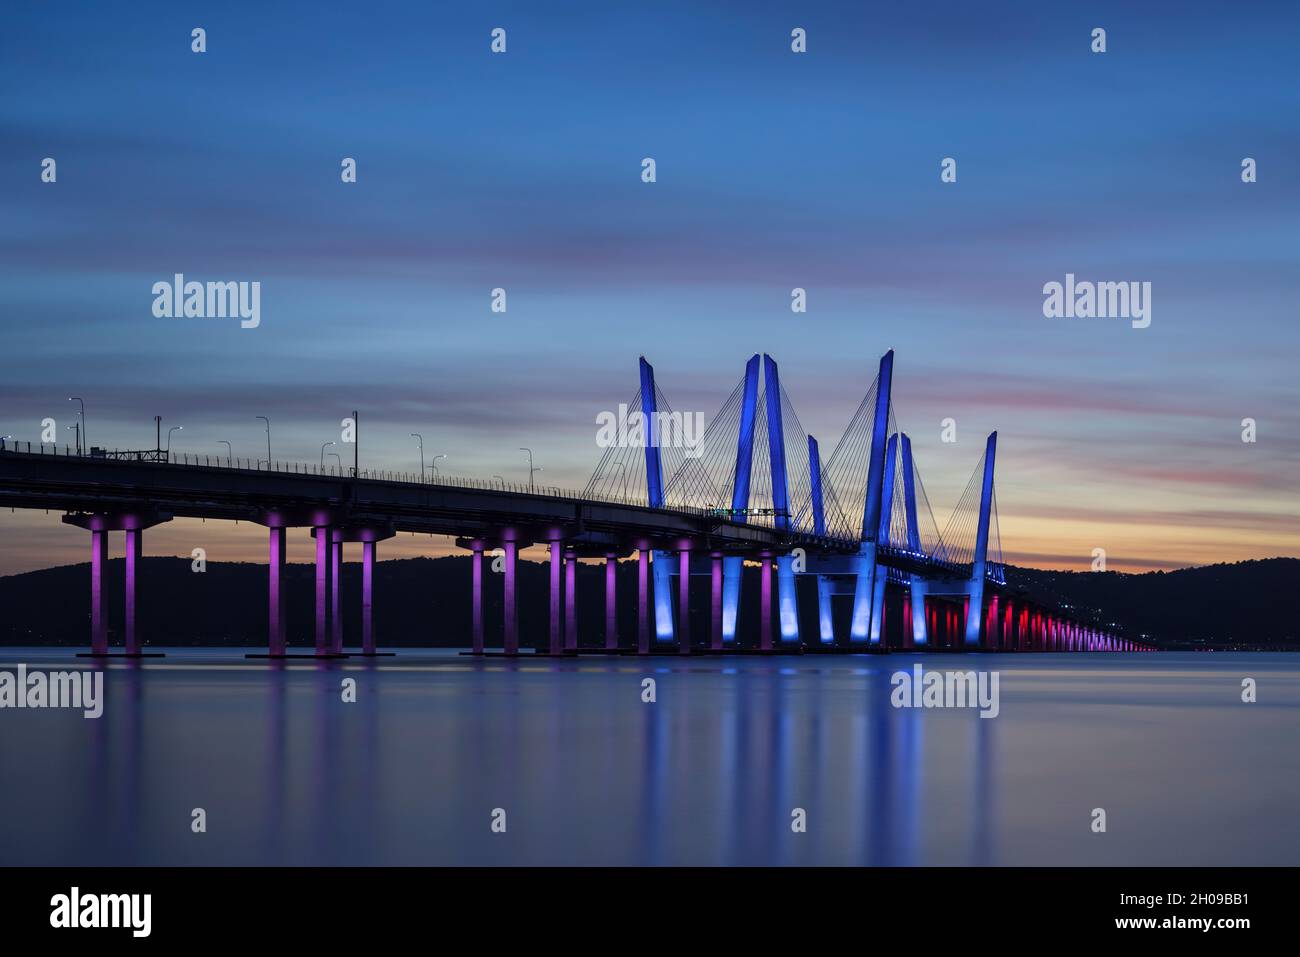 El Puente del Gobernador Mario M. Cuomo, iluminado en rojo, blanco y azul en reconocimiento al Día de Colón, abarca el río Hudson justo después de la puesta del sol. Foto de stock